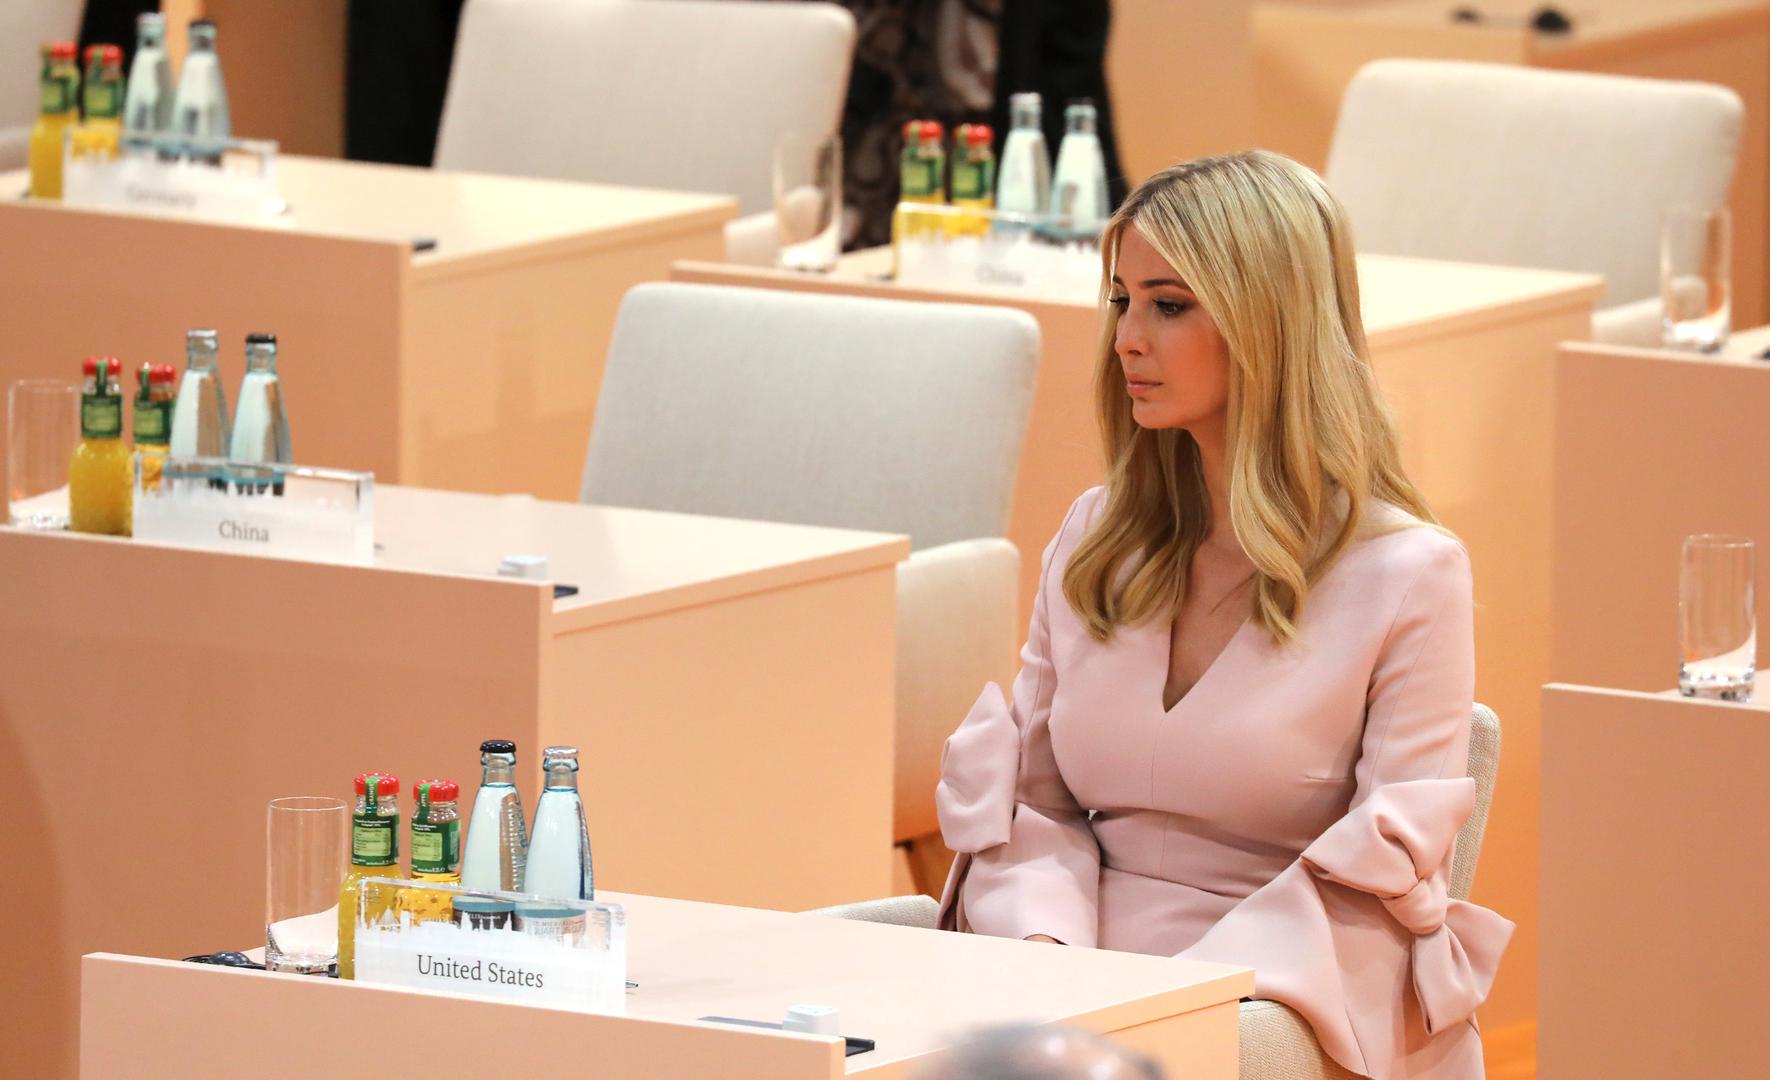 Američkog predsjednika Donalda Trumpa je u subotu na radnom sastanku na summitu G20 zamijenila kći Ivanka.